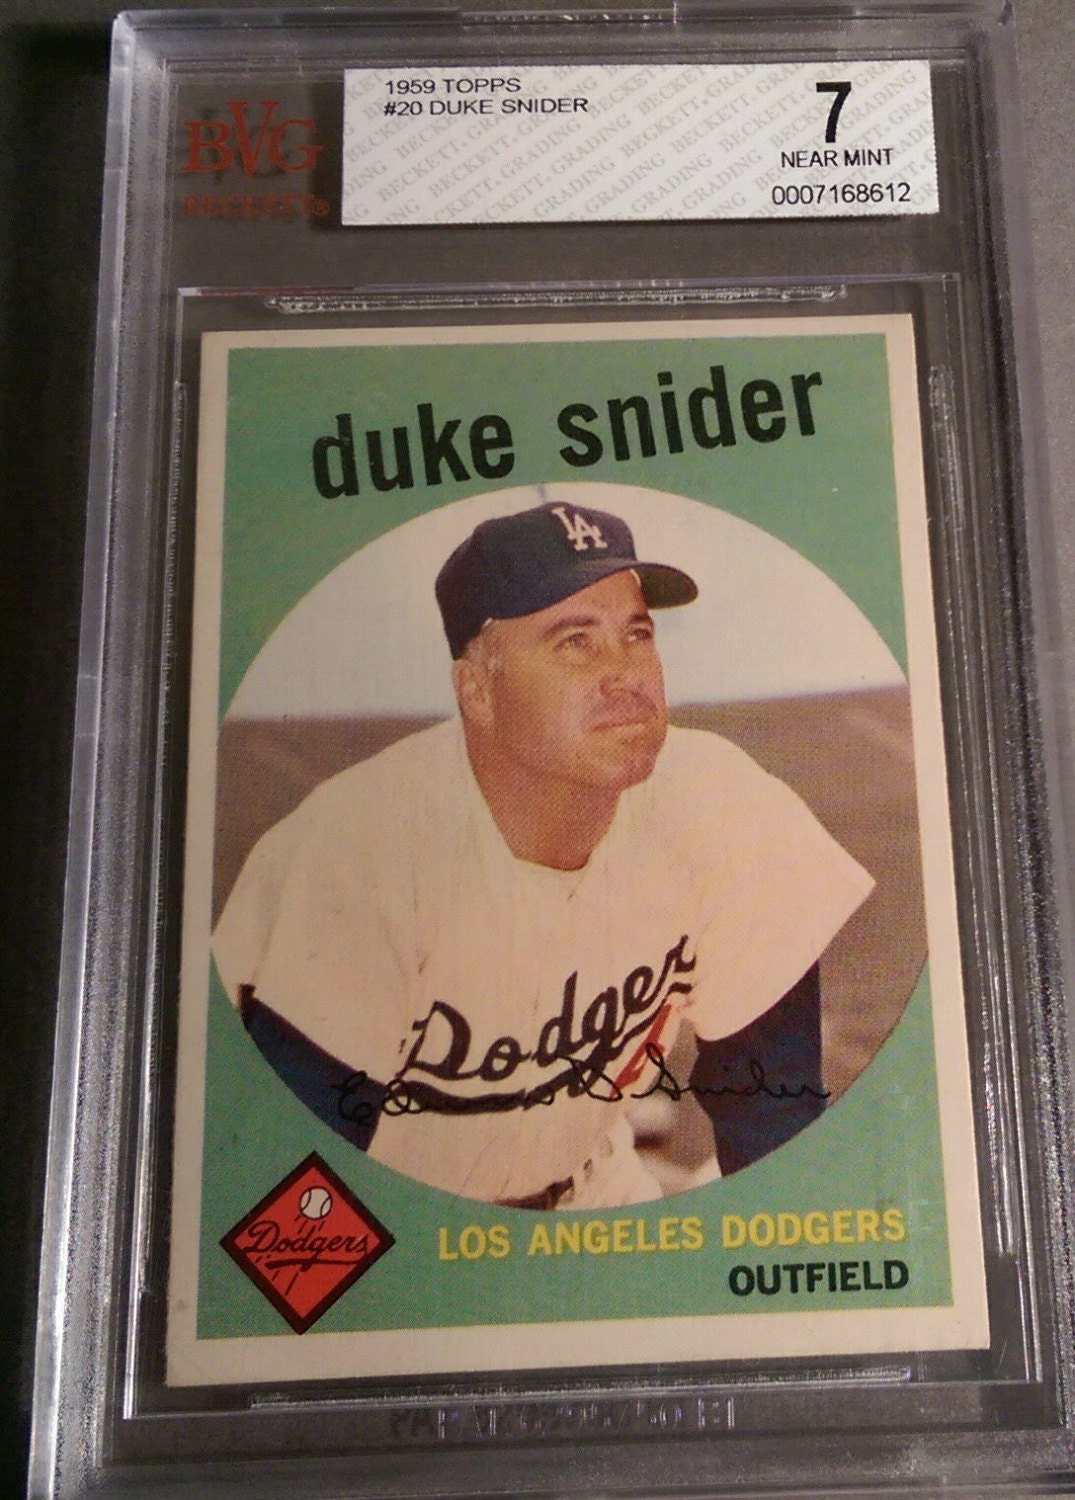 1959 Duke Snider Topps Baseball Card 20 Graded BVG by stevezeller